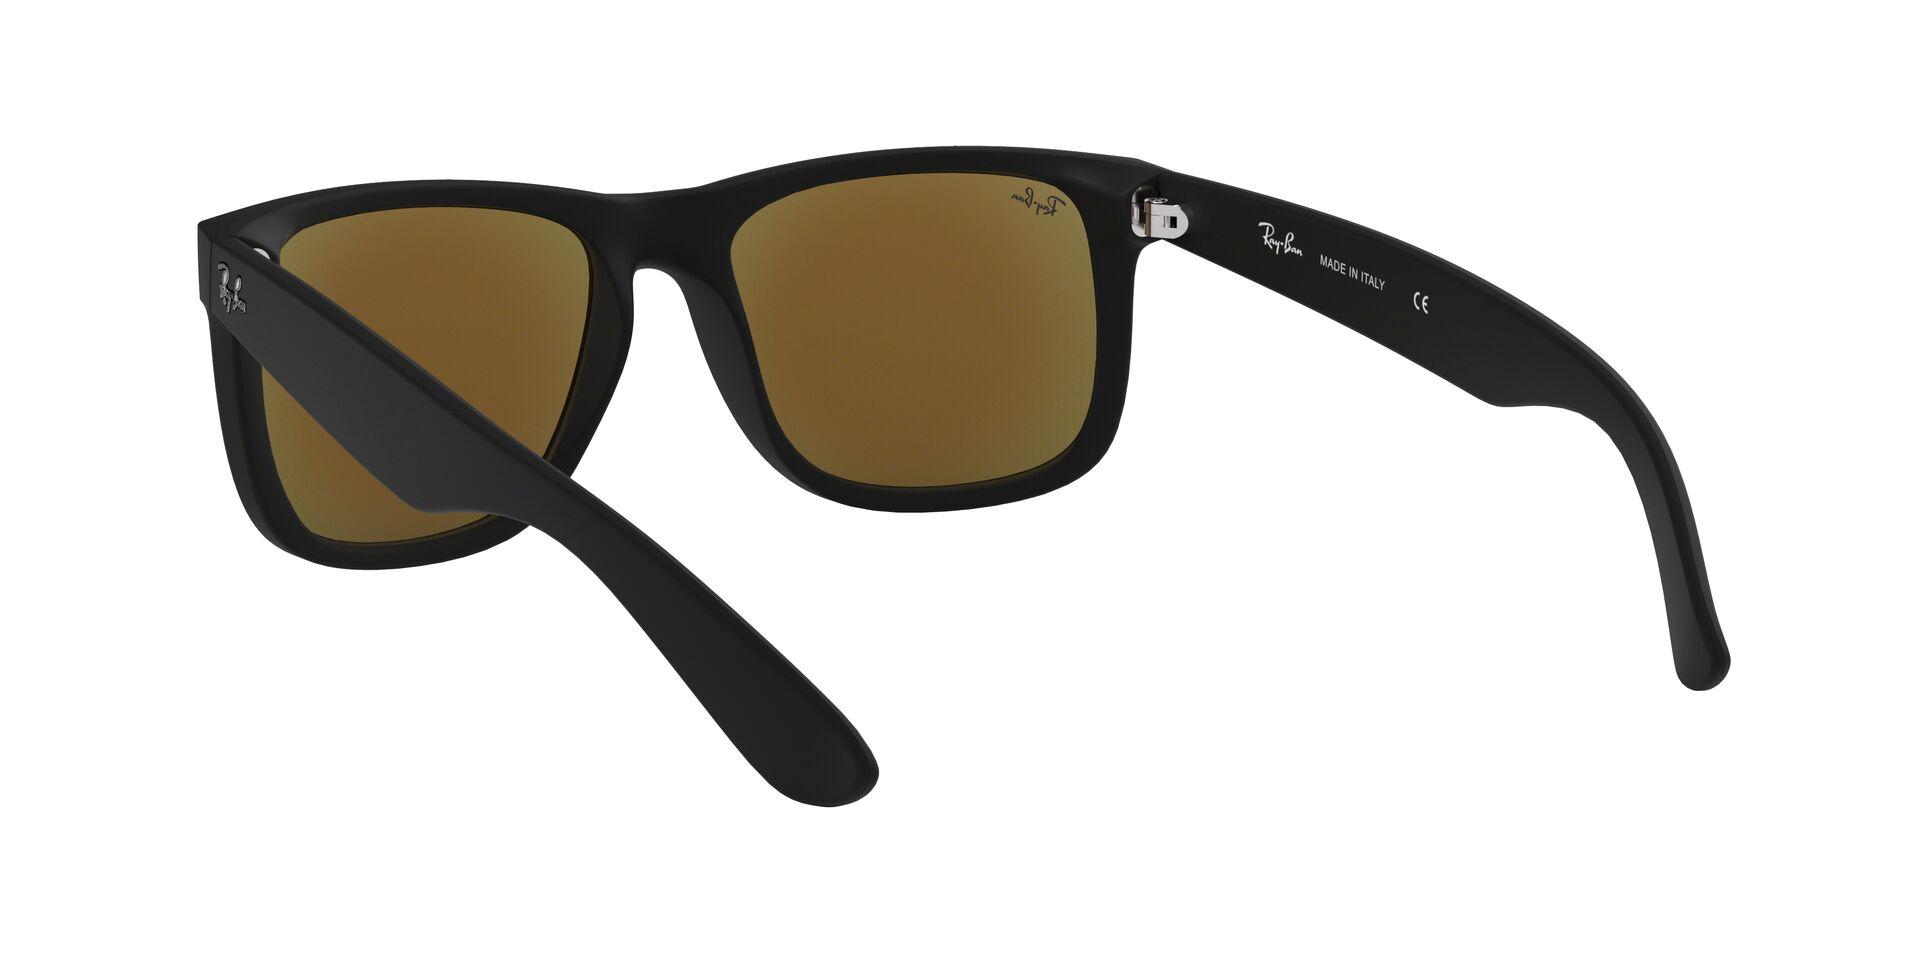 Mắt Kính Ray-Ban Justin - RB4165F 622/55 -Sunglasses